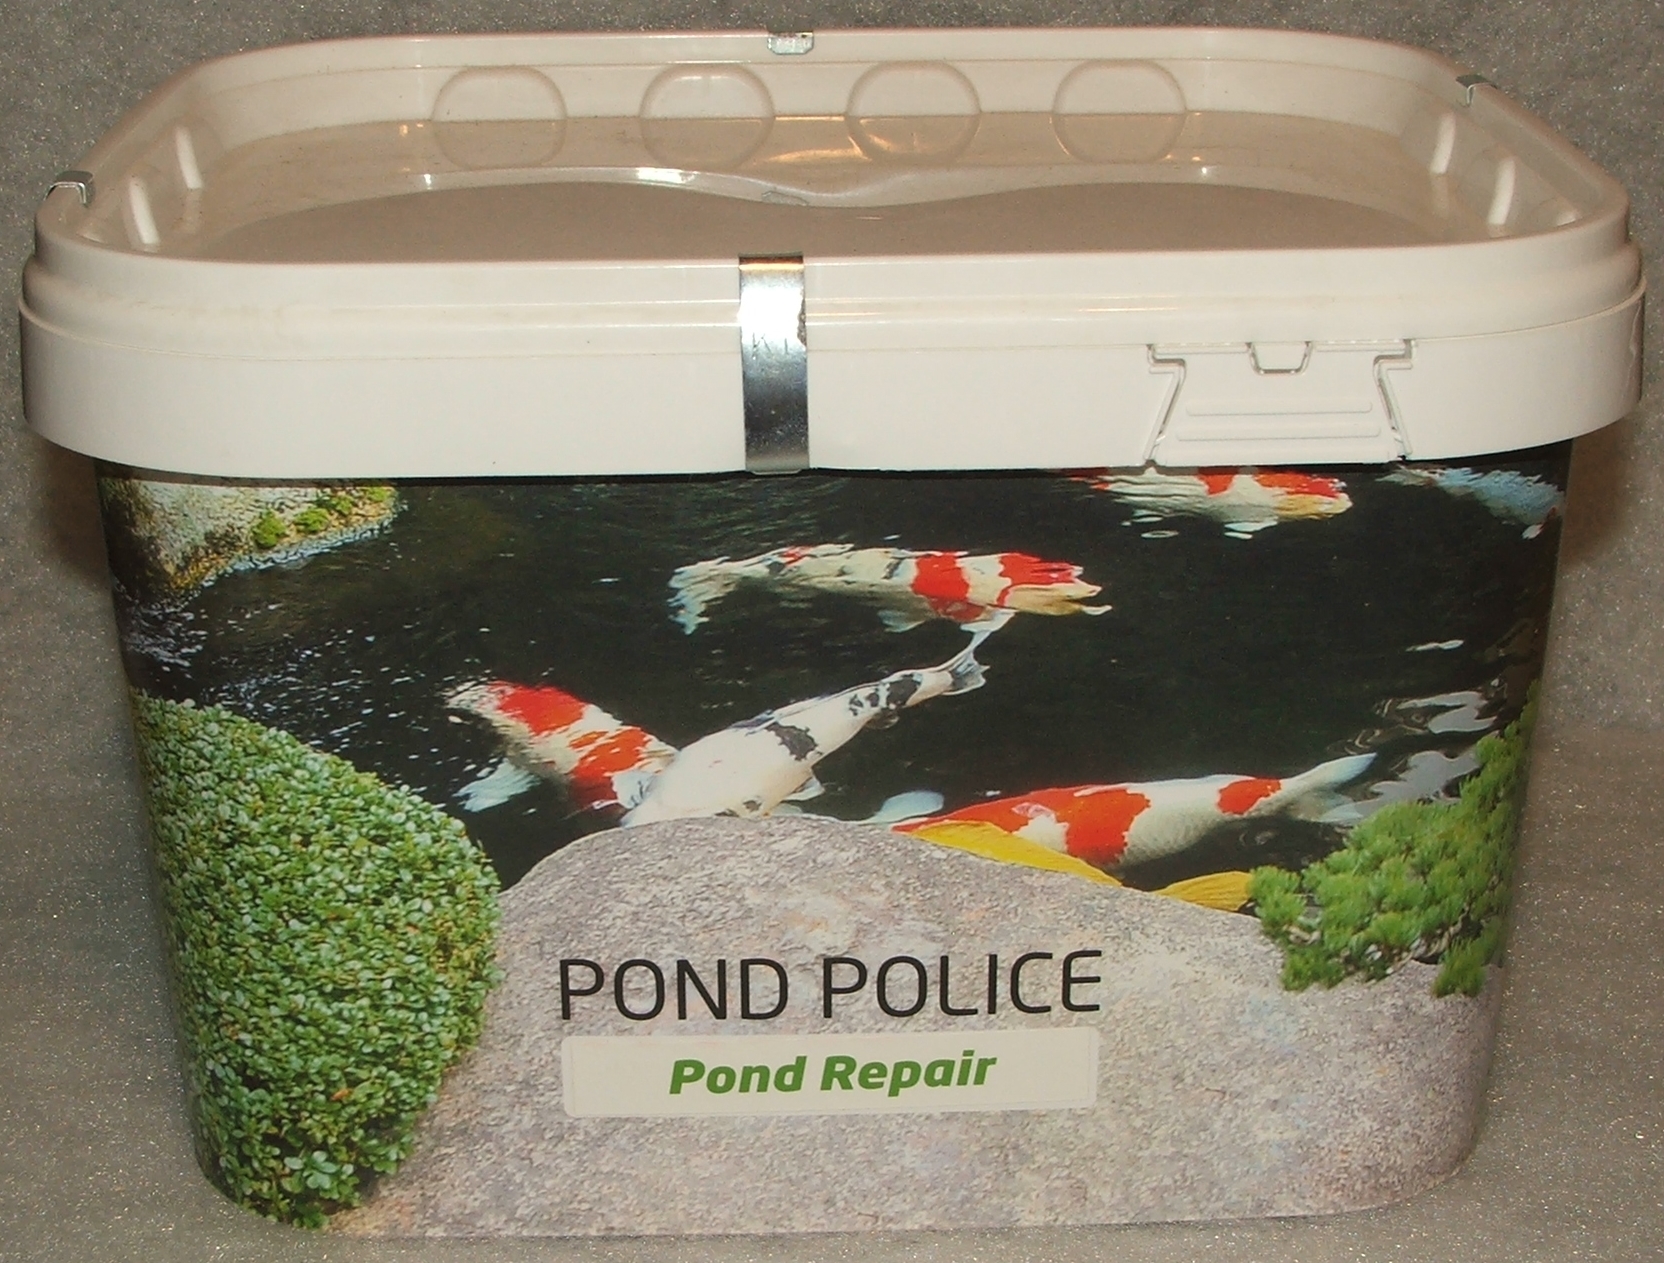 Pond Repair 10 kg